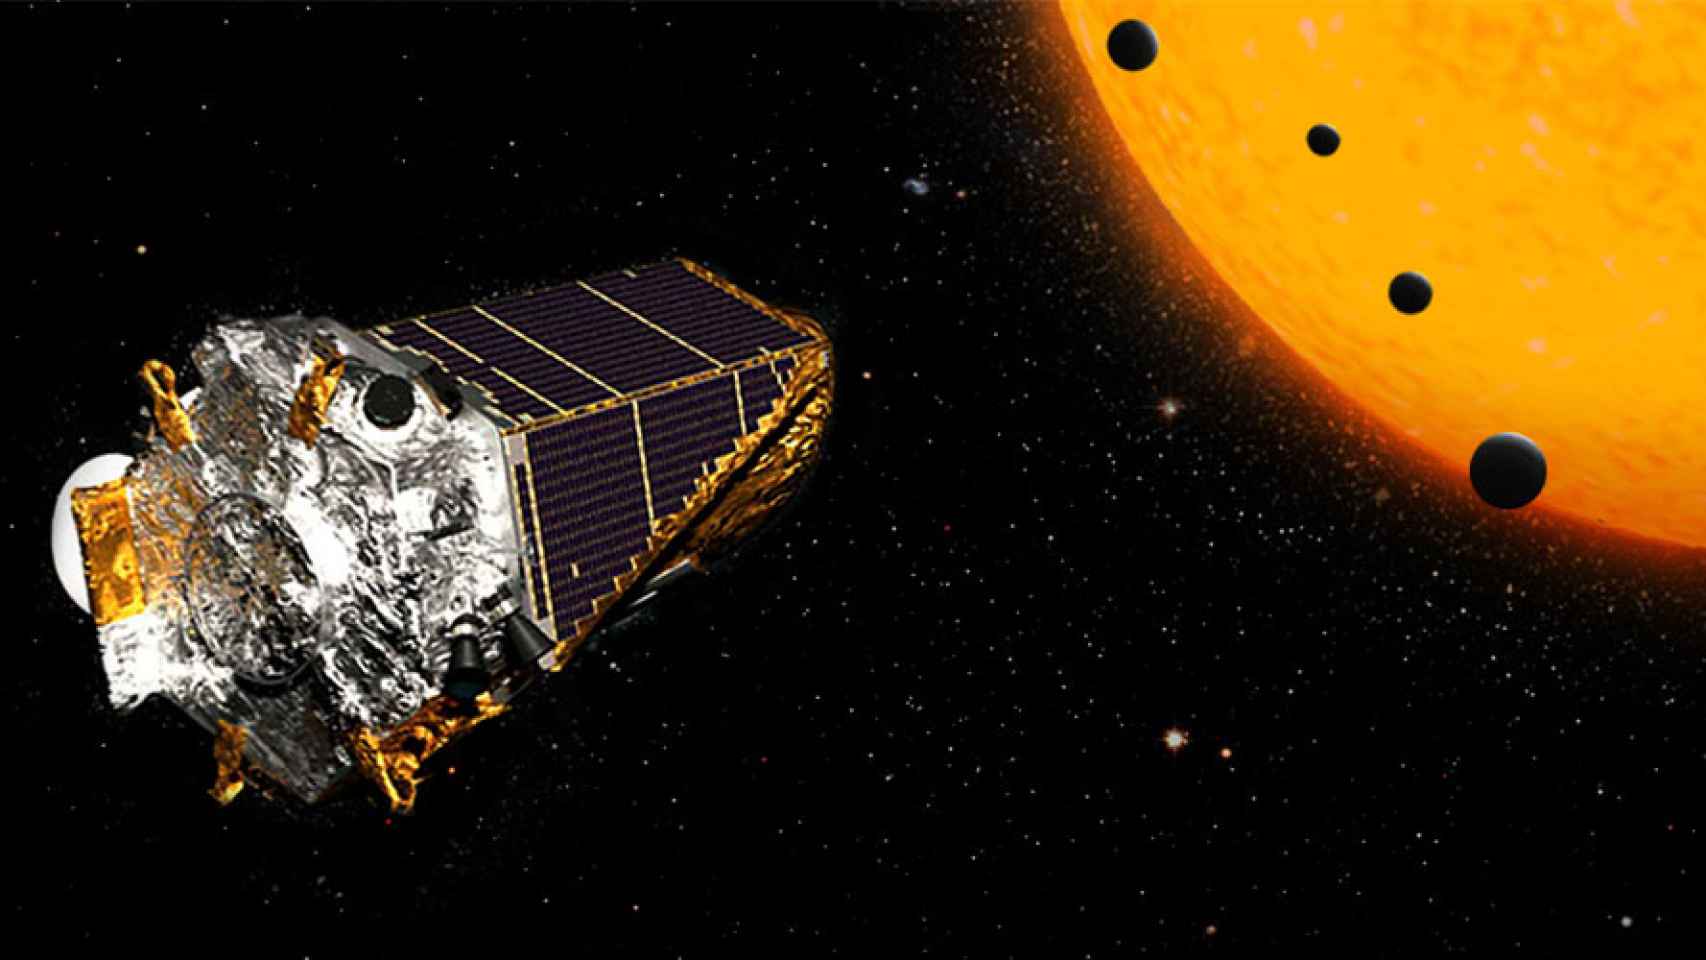 kepler telescopio espacial en busca de exoplanetas